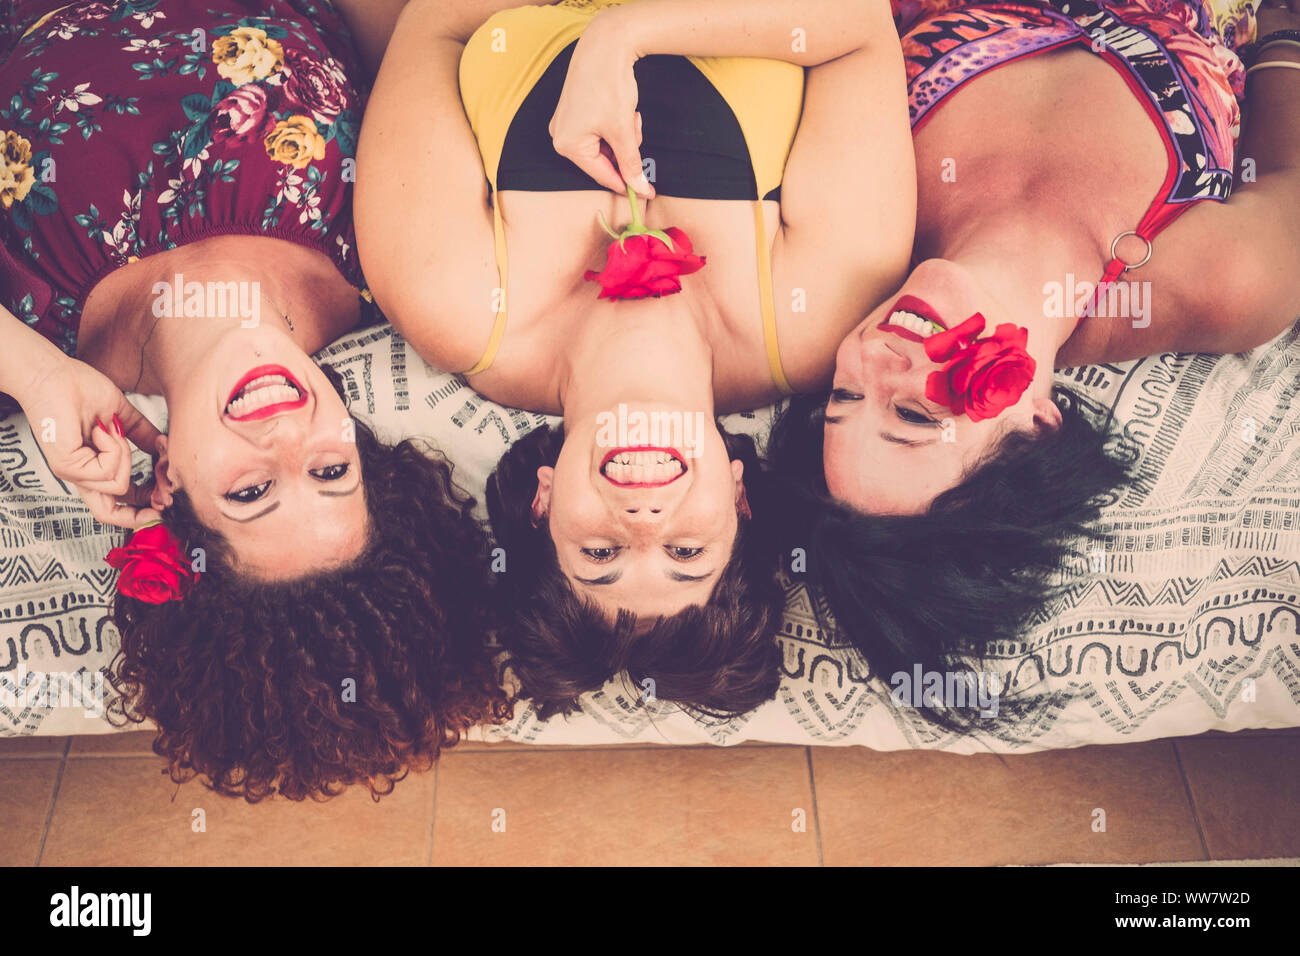 Schön und schöne drei kaukasischen Frauen zu Hause auf dem Bett lag, mit einem großen Lächeln und Glück. Spielen mit Rosen und roten Farben Lippenstift und Blumen. glück Freundschaft Konzept Bild Stockfoto